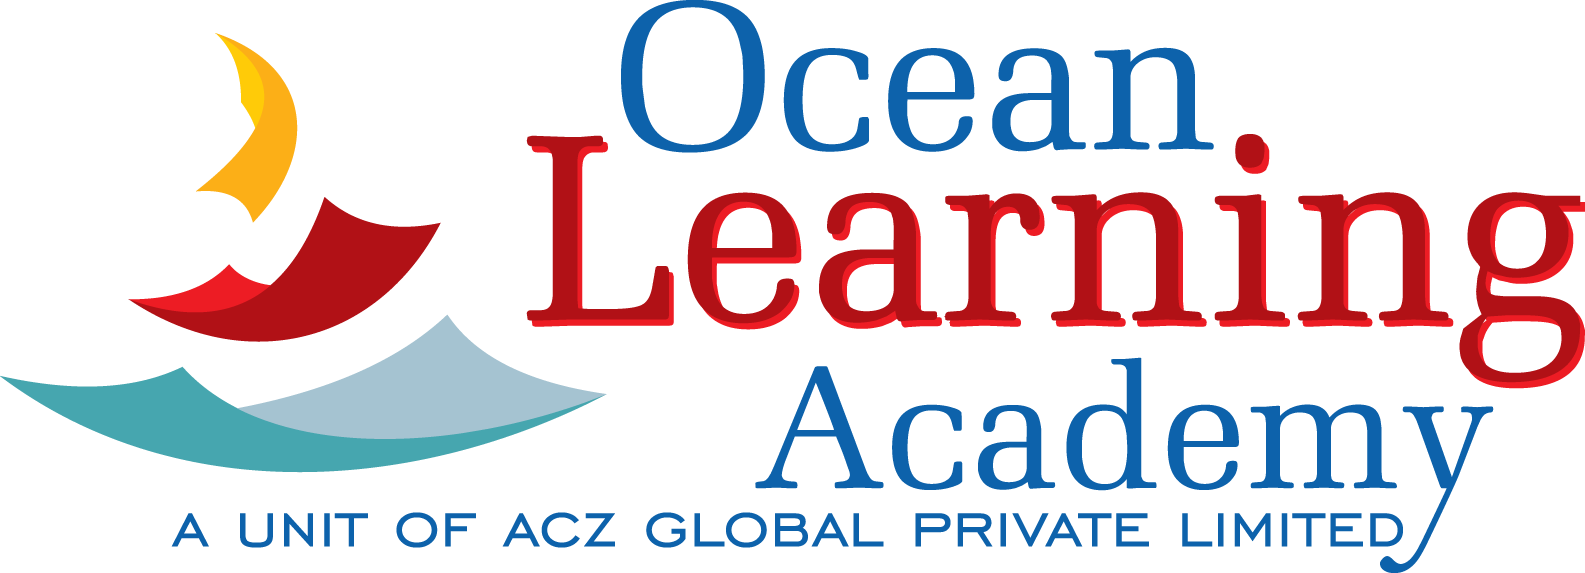 Ocean Learning